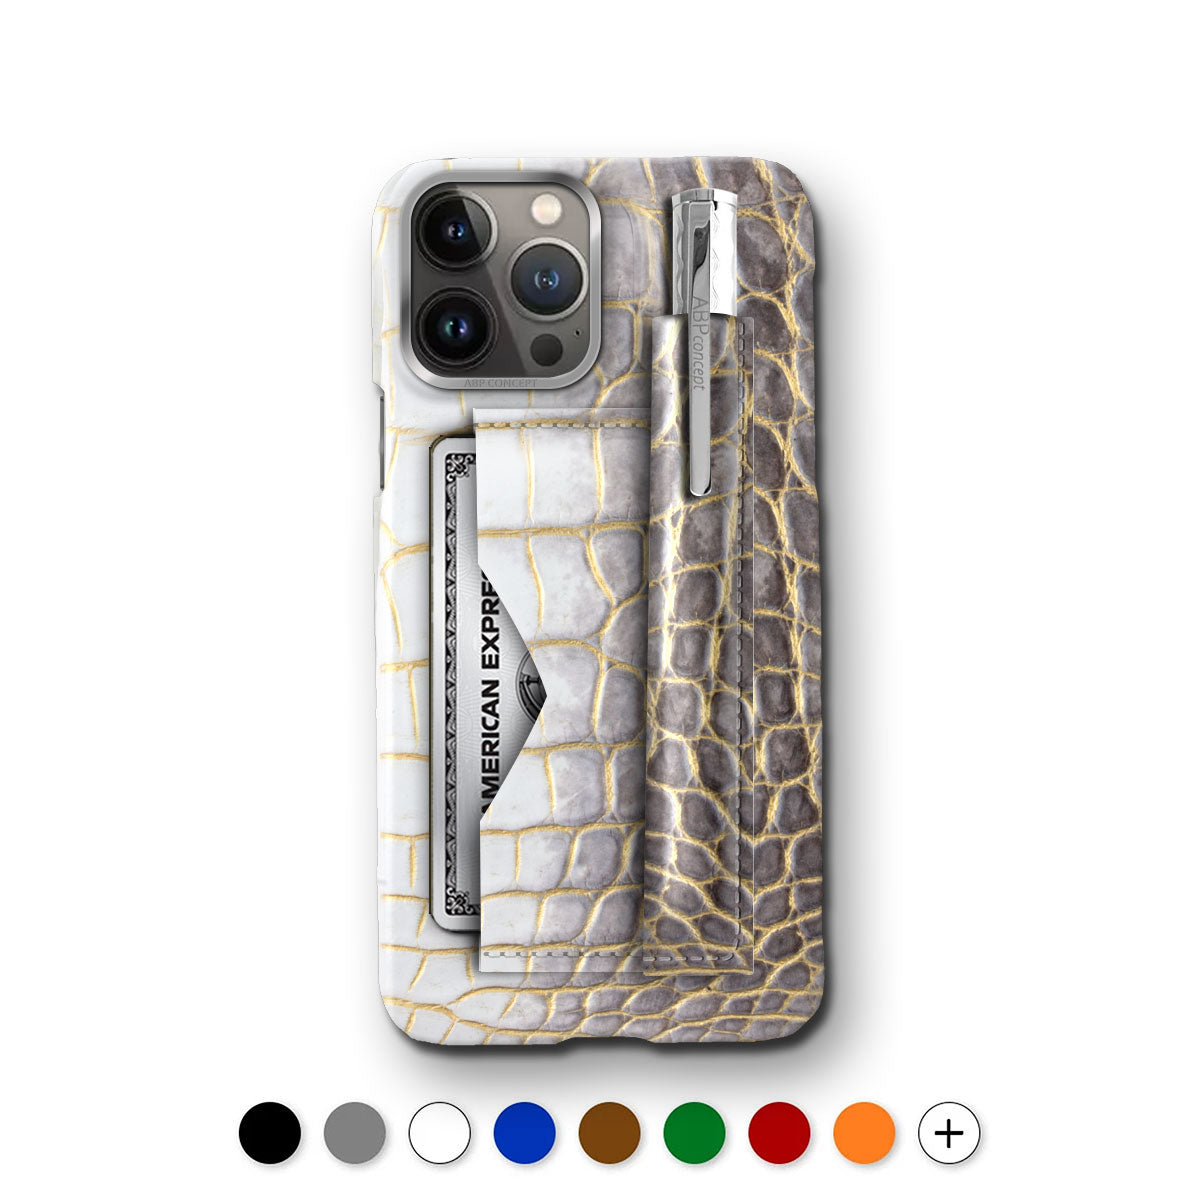 Coque cuir "Business case" pour iPhone 15, 14 & 13 Pro Max avec etui carte et stylo - Alligator Himalaya